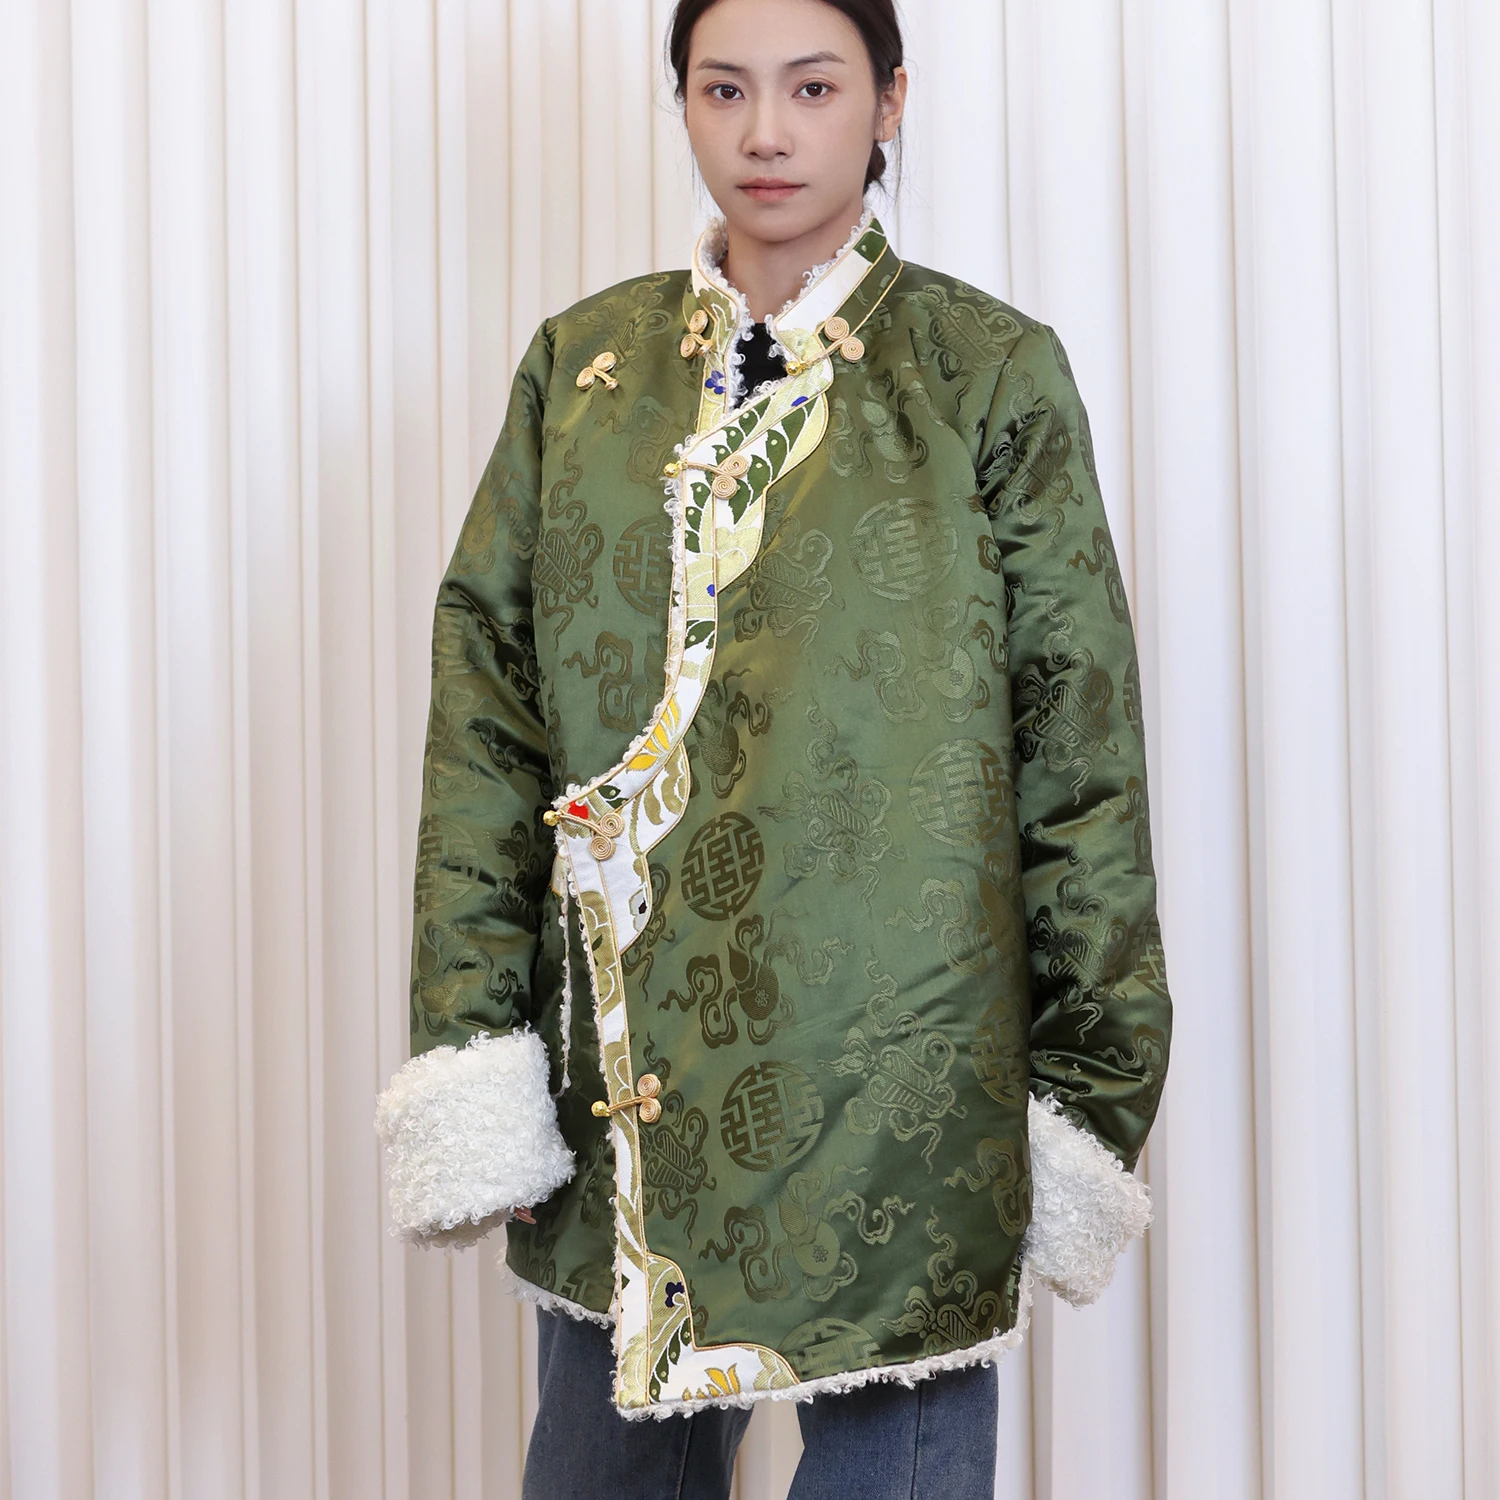  Зеленый Топ Зимнее пальто с хлопковой подкладкой Женская утолщенная хлопковая подкладка Тибетская одежда День Повседневная одежда Куртка Изображение 2